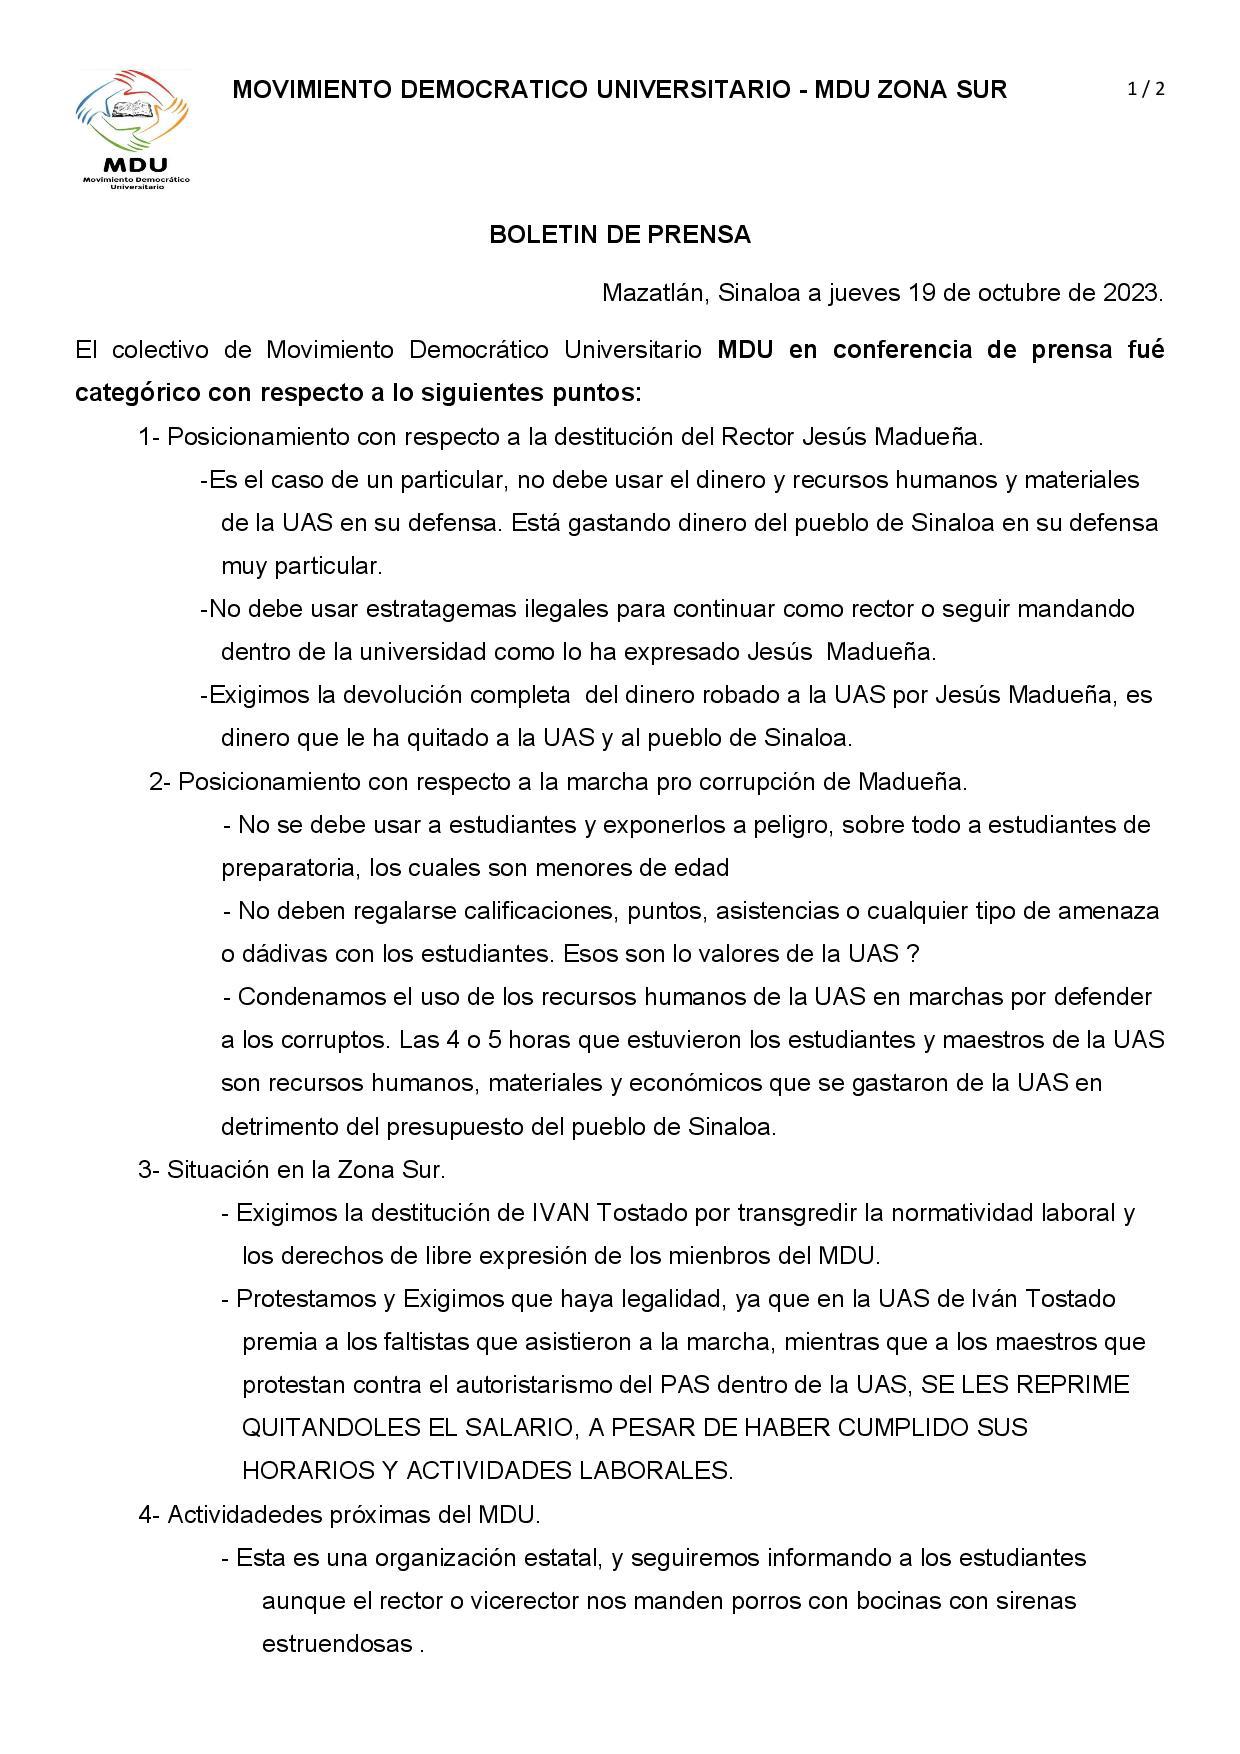 $!Movimiento Democrático pide que Jesús Madueña no utilice recursos de la UAS para su defensa